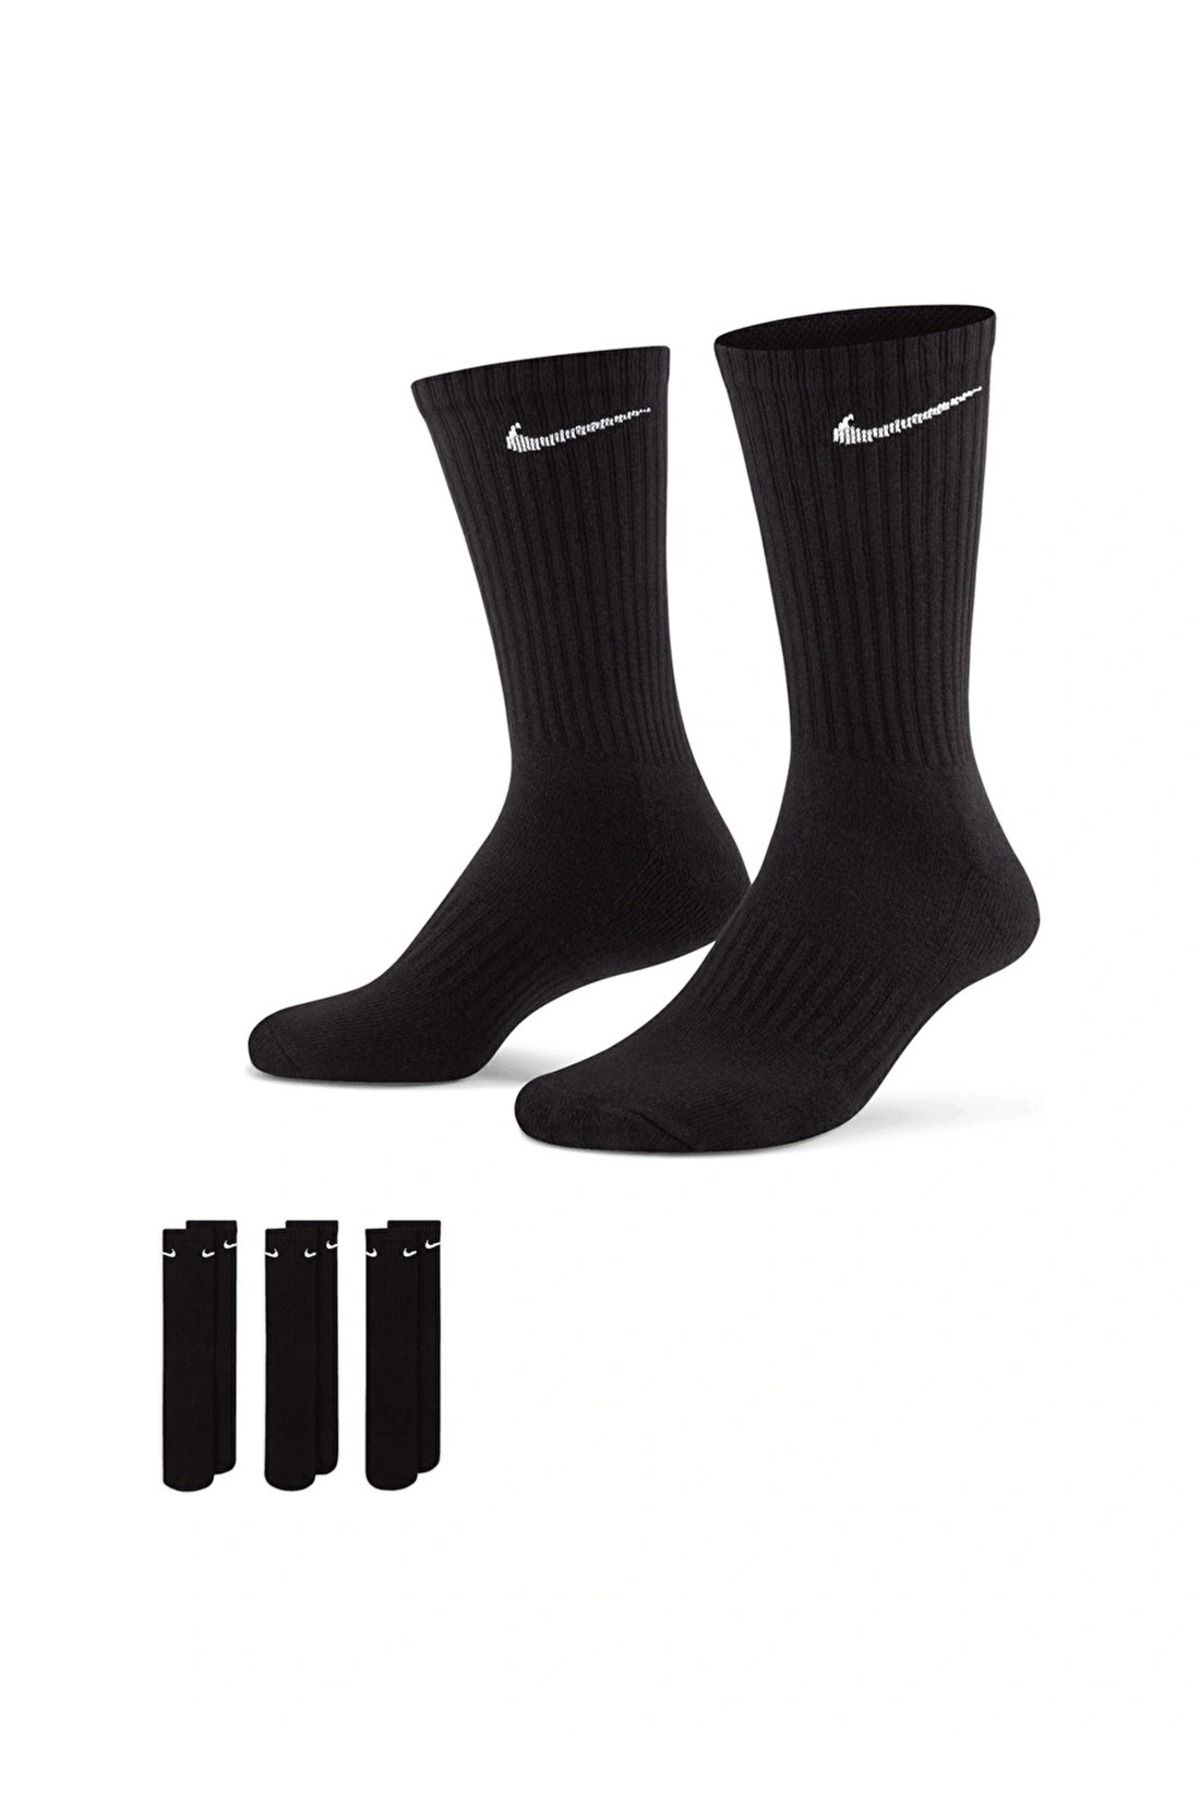 Nike Everday Cushion Spor Uzun Siyah Unisex Çorap 3 Çift 38-42 Numara